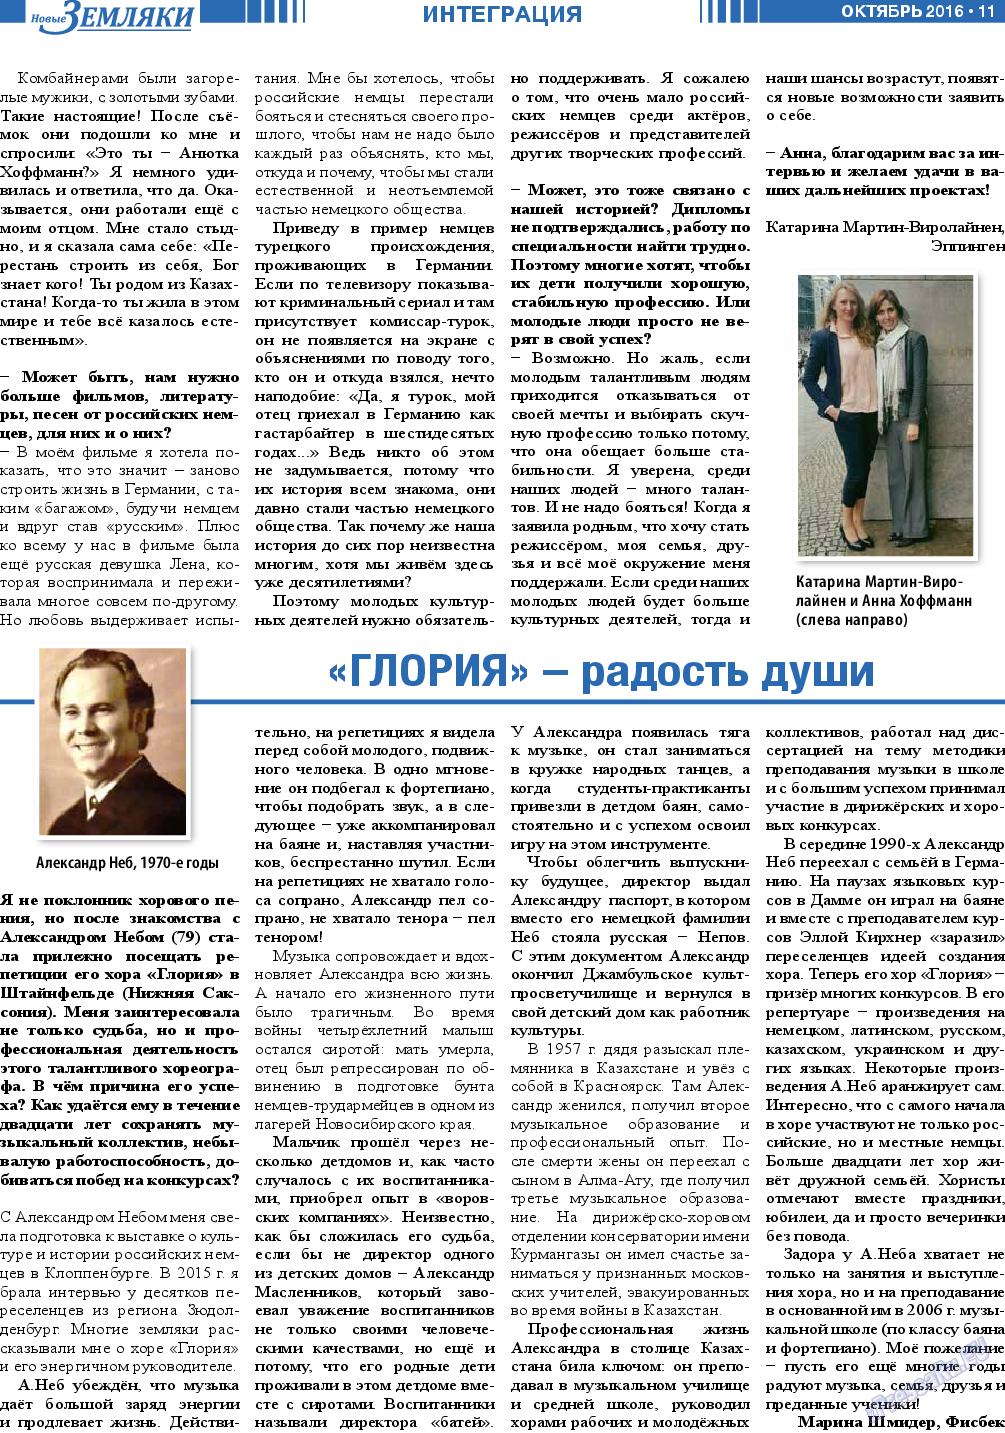 Новые Земляки, газета. 2016 №10 стр.11